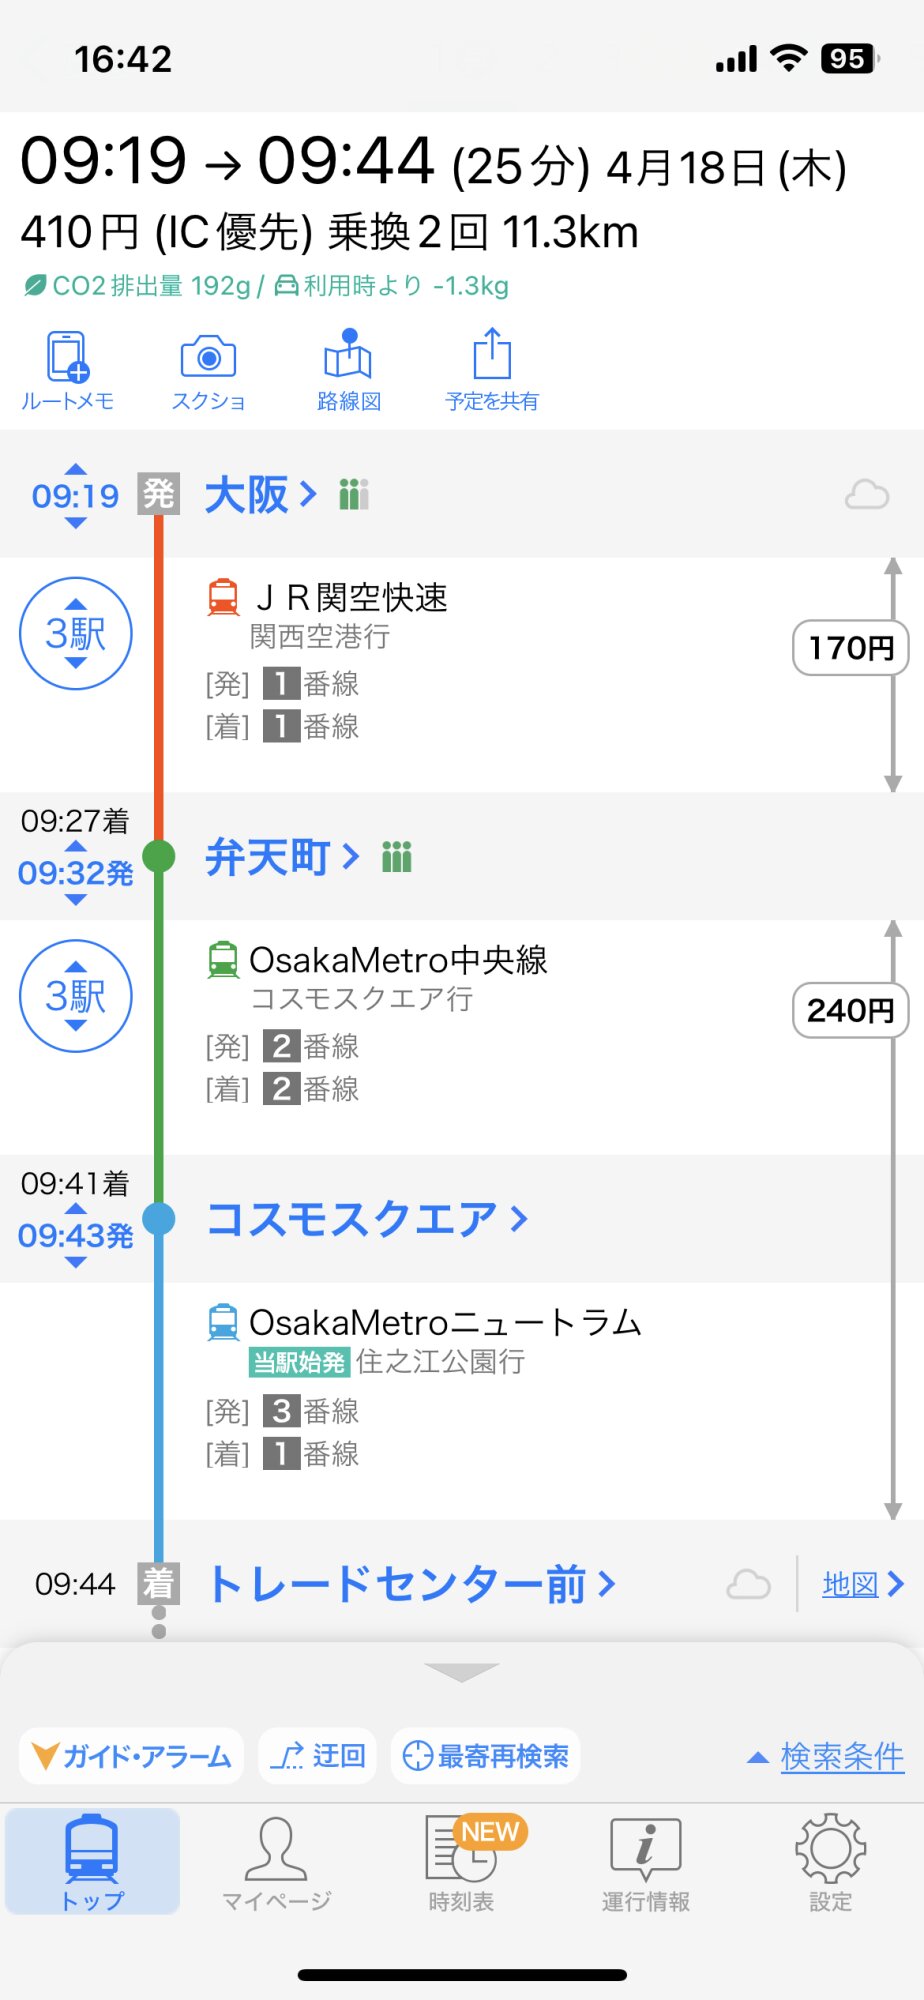 大阪からのルート。乗換はあるが、25分で到着